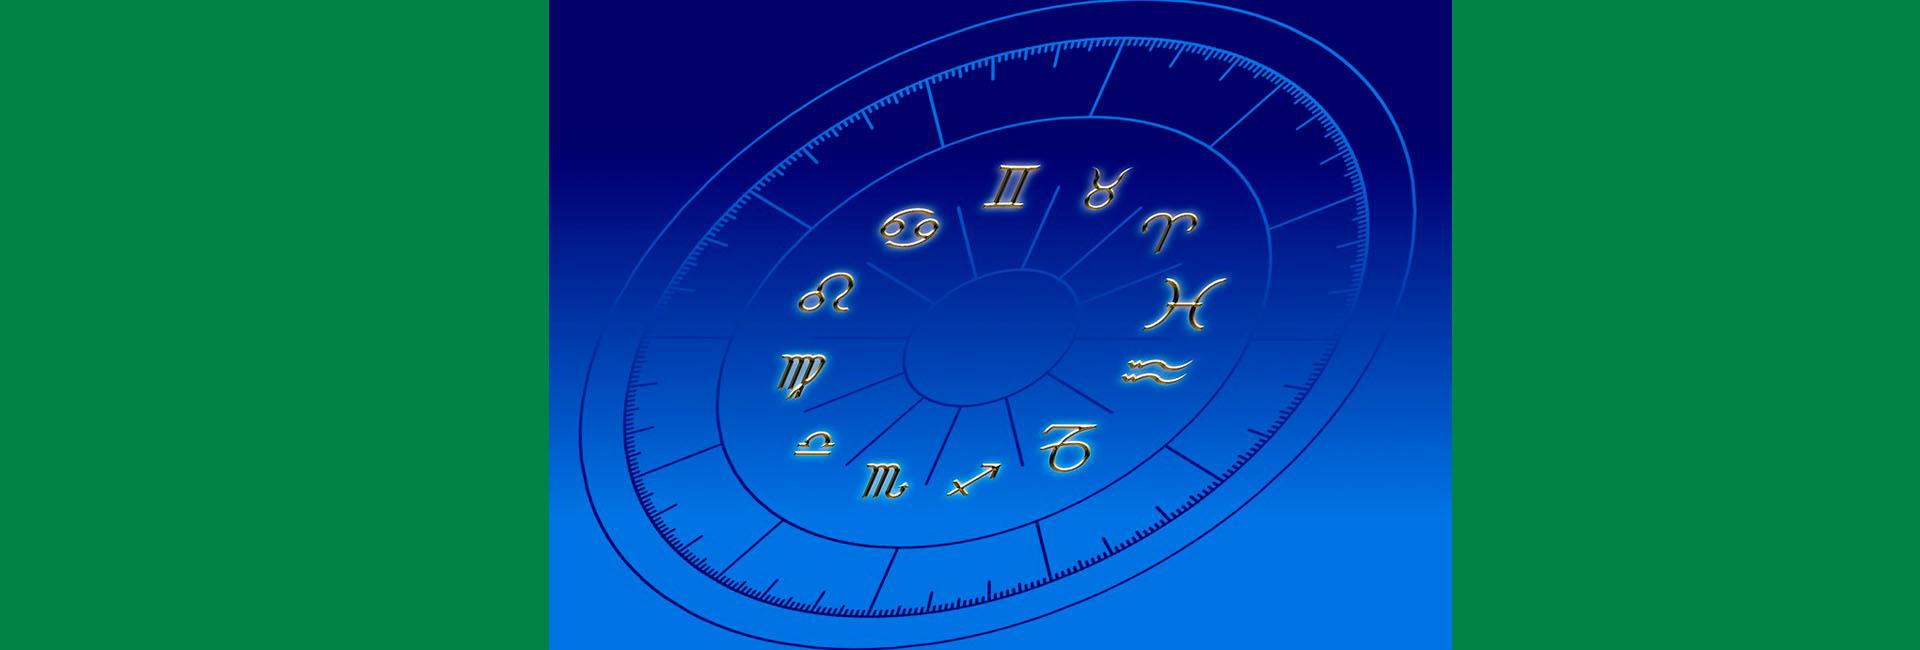 O Cristão deve acreditar em horóscopo?